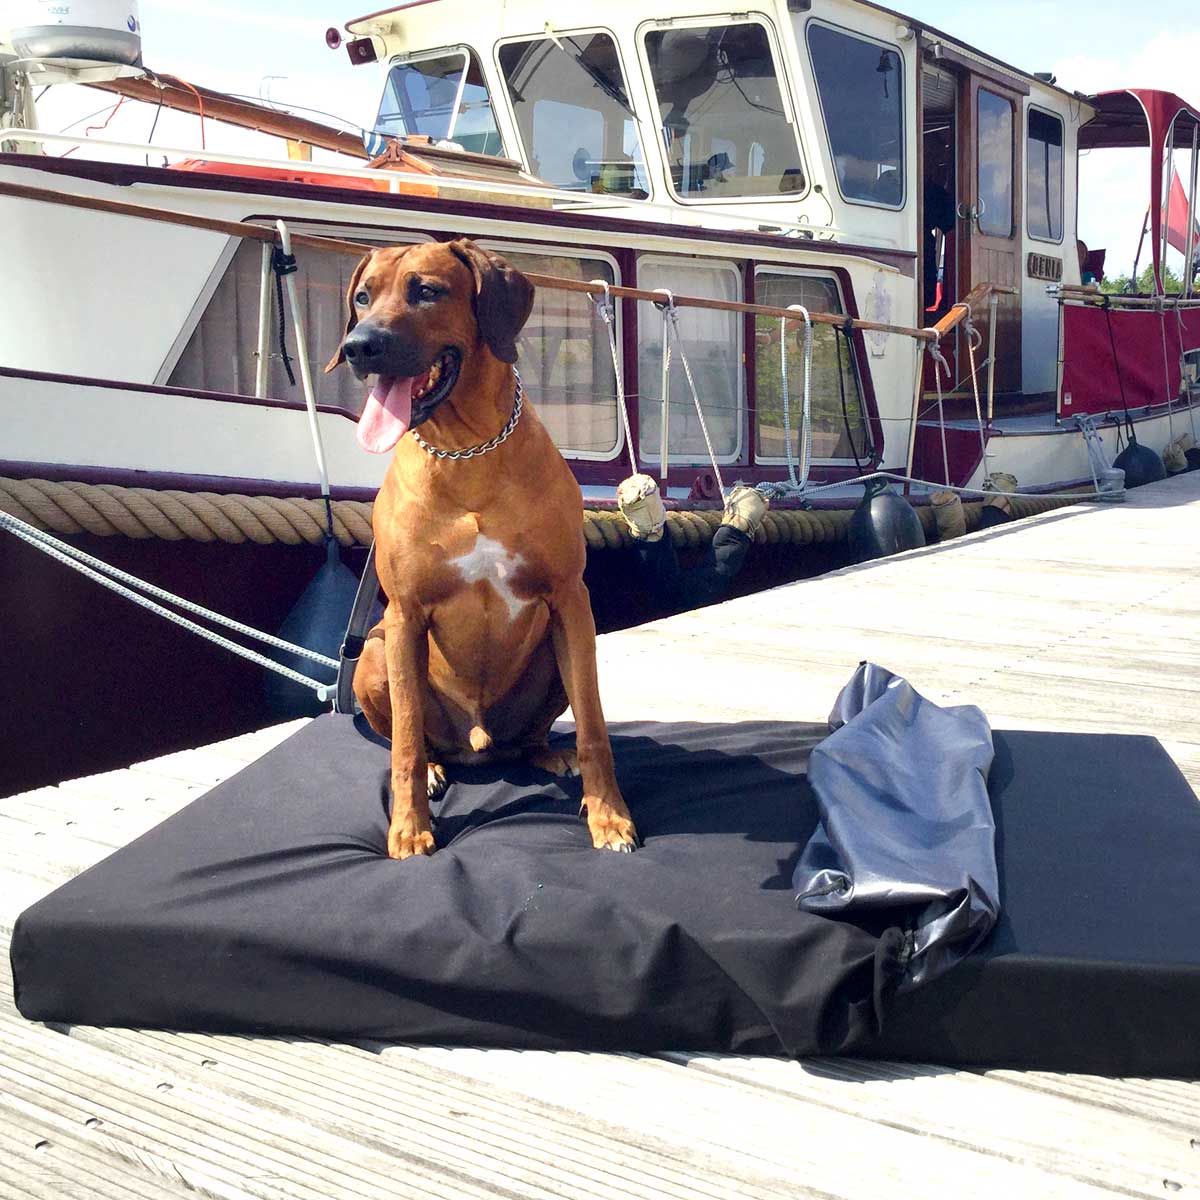 joodog YACHT - joodog YACHT – Spezialmatte für Boote und Yachten | Sonne und Salzwasser können kommen, Orthopädische Hundematte, Hundebetten Grosshandel, Wholesale.